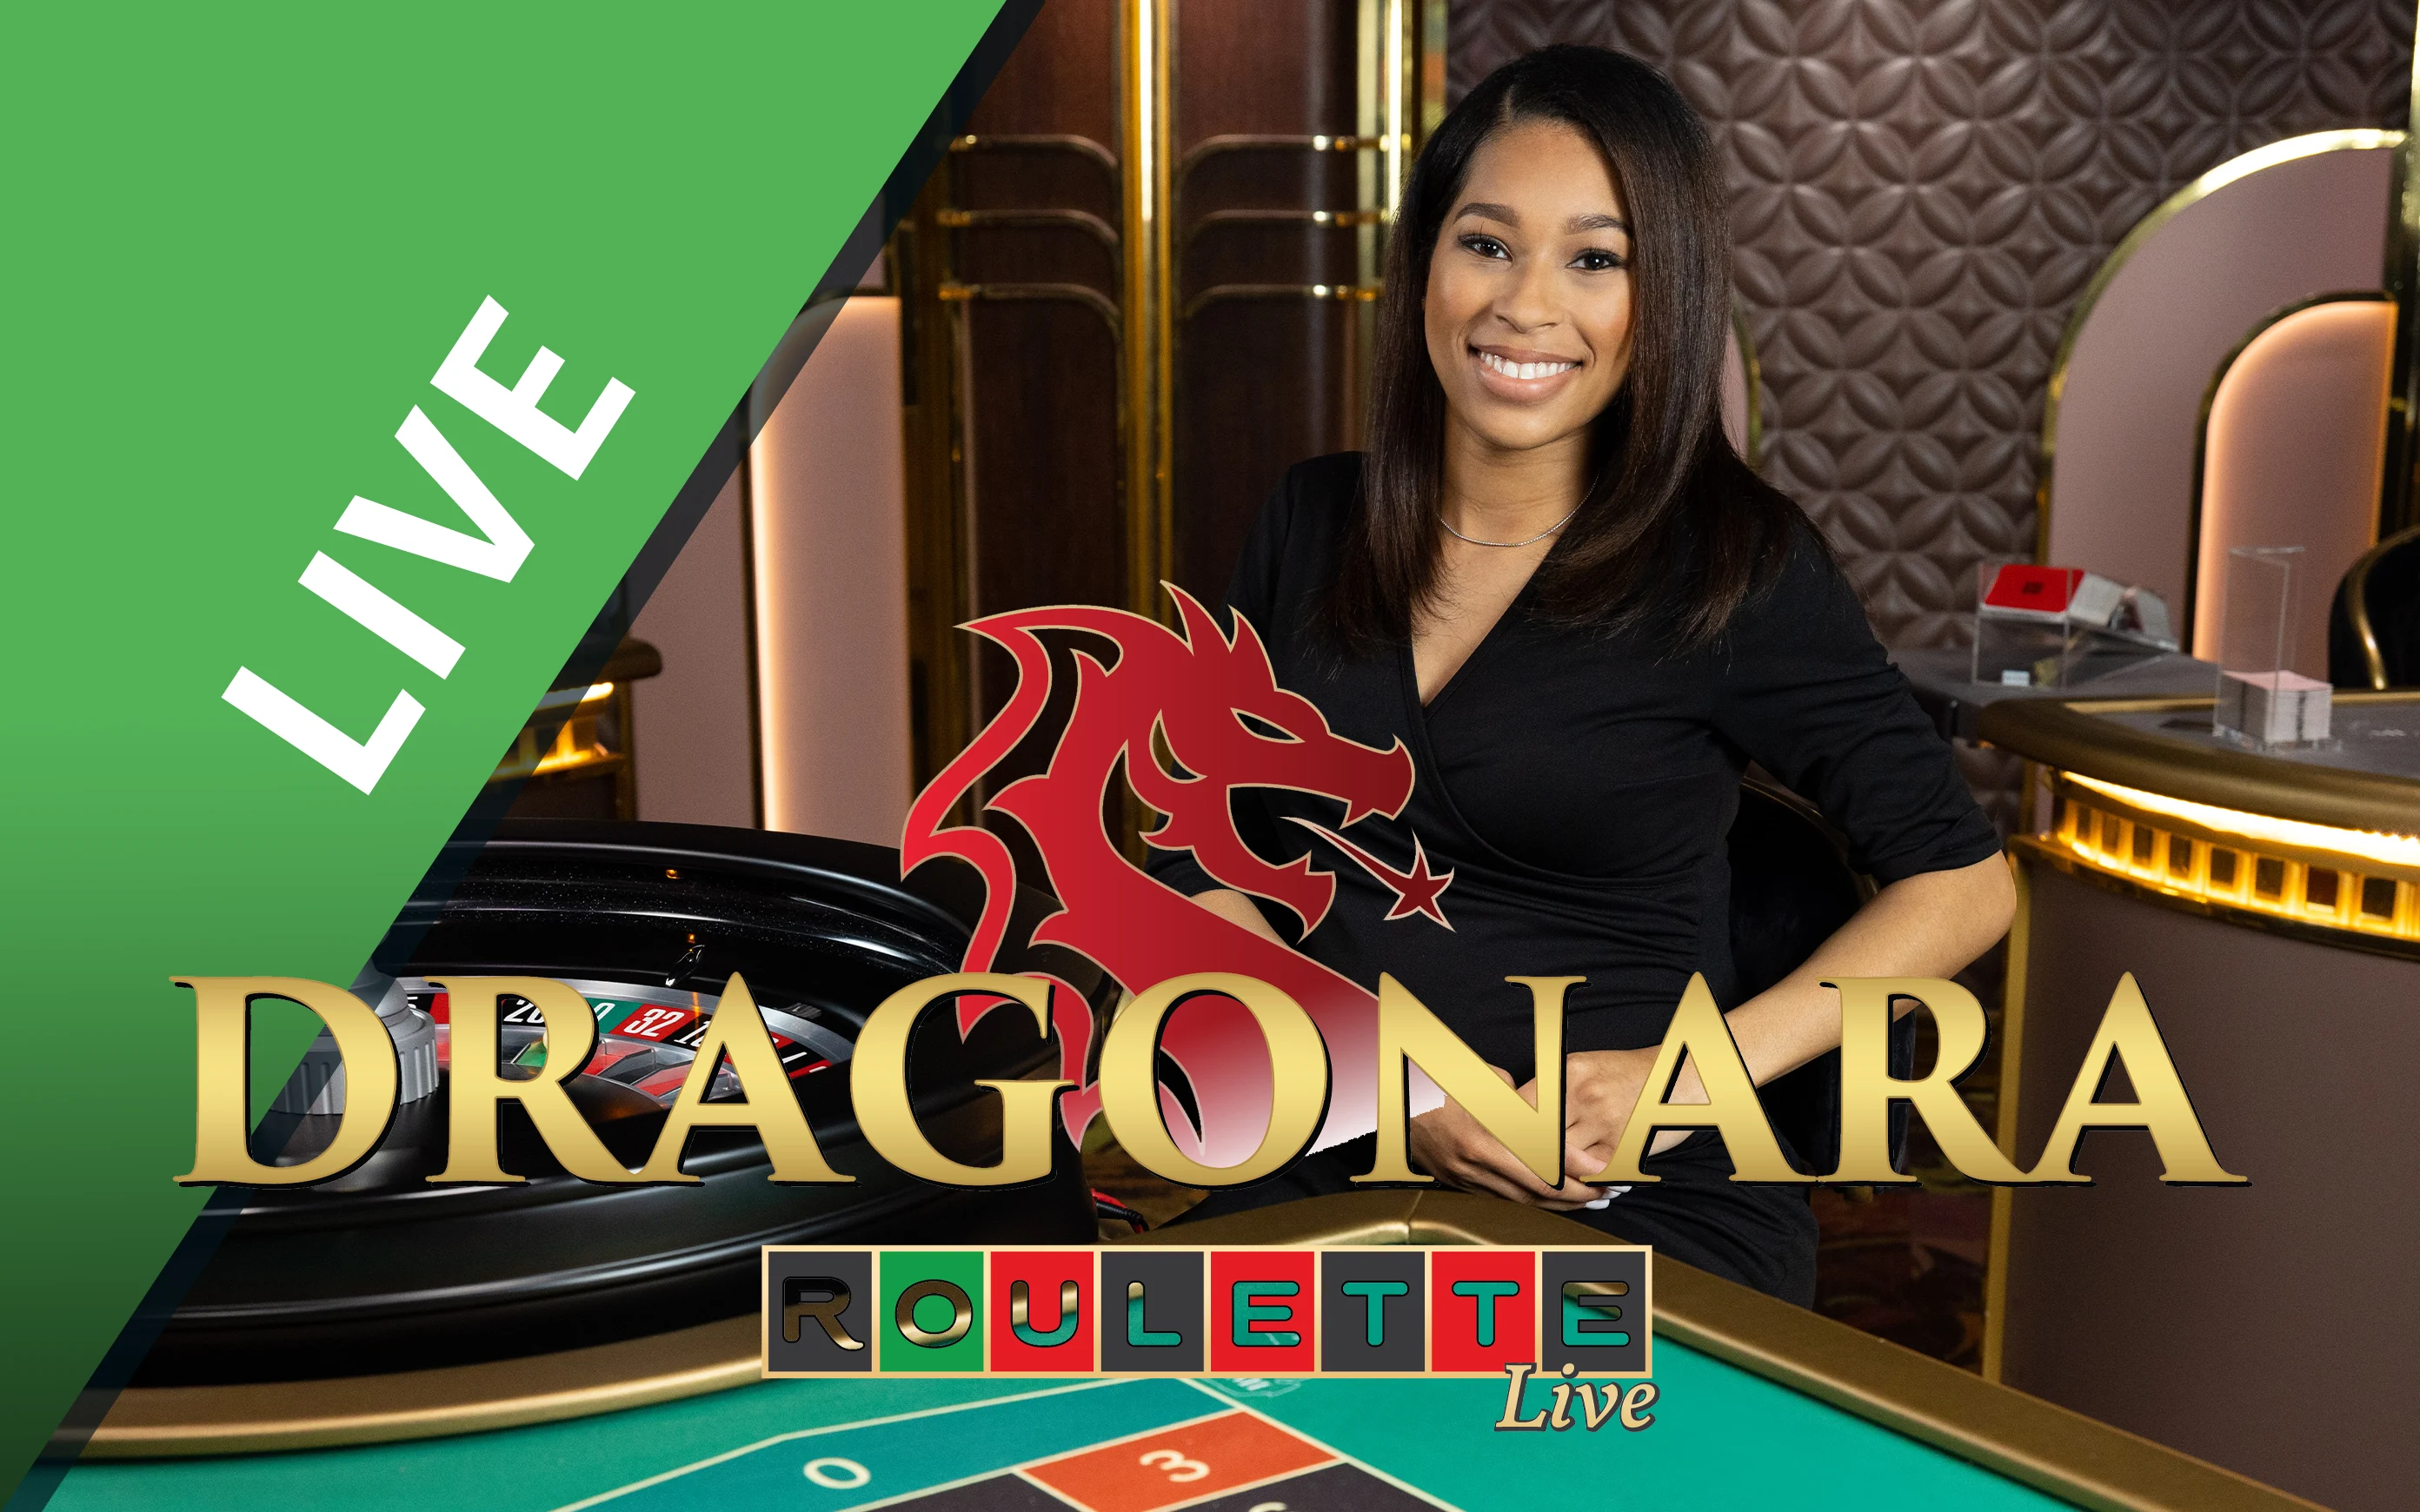 Spielen Sie Dragonara Roulette auf Starcasino.be-Online-Casino